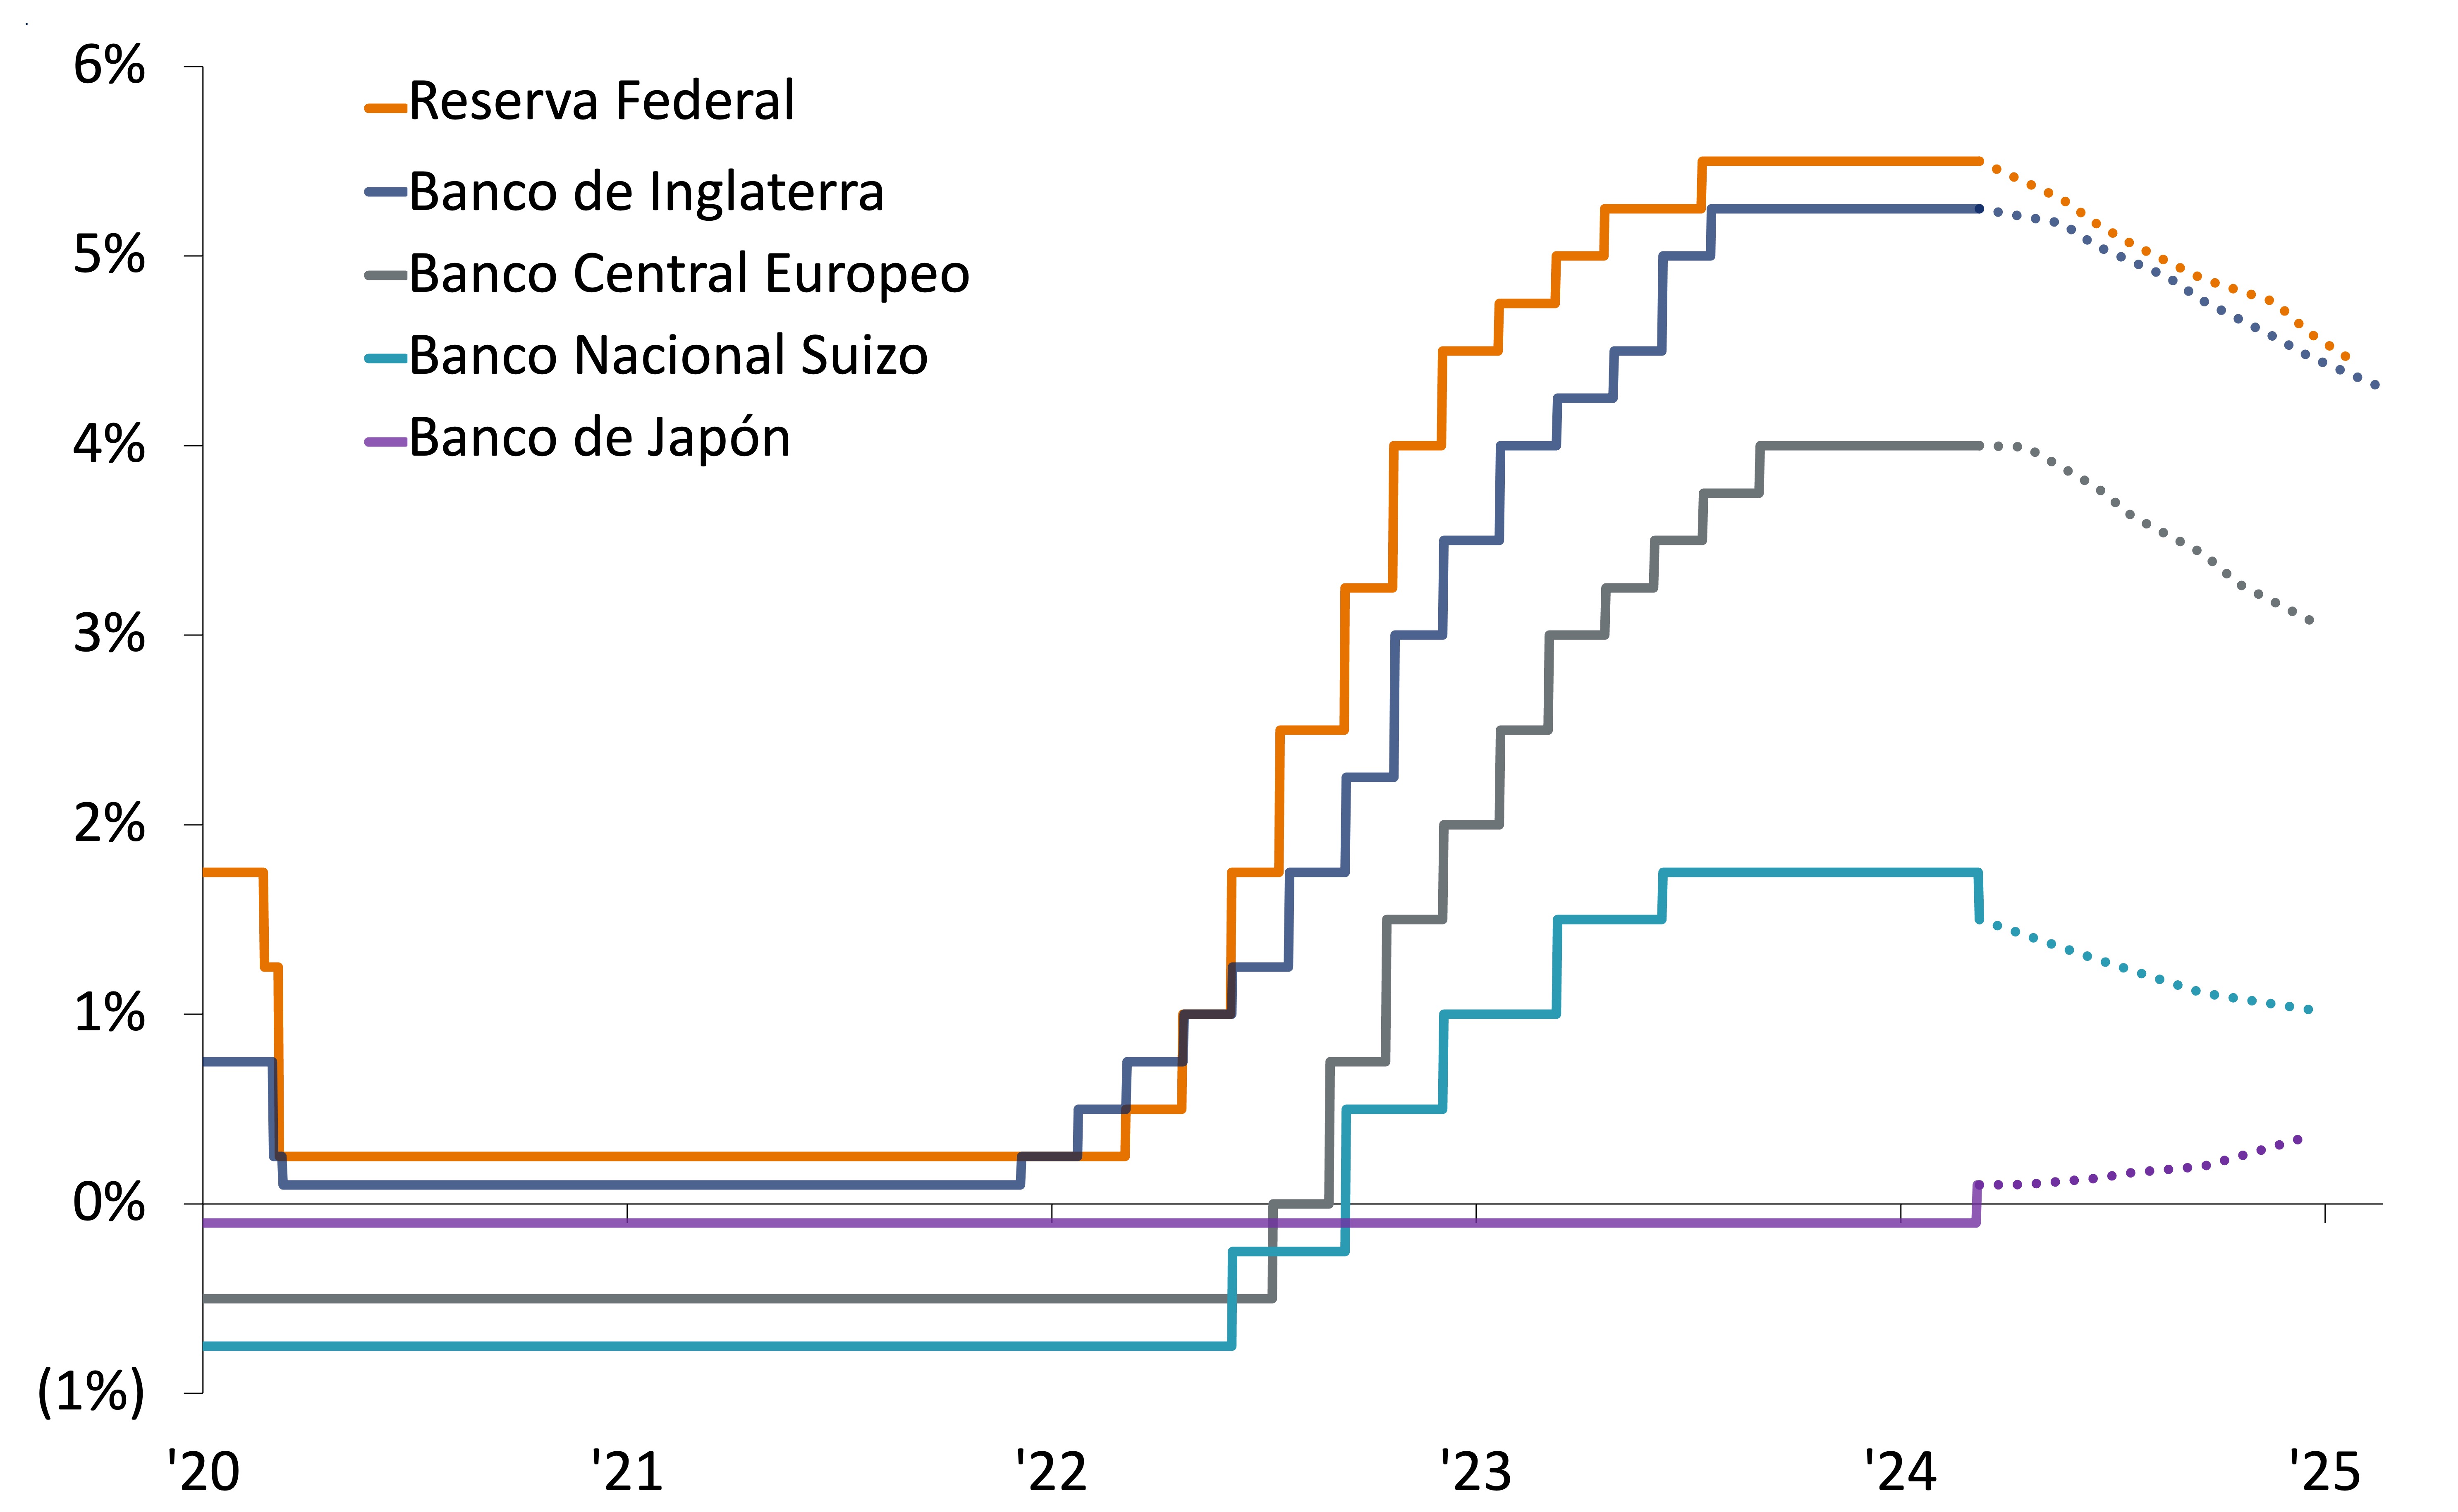 Este gráfico muestra las tasas de política monetaria y expectativas para la Reserva Federal, Banco de Inglaterra, Banco Central Europeo, Banco Nacional Suizo y Banco de Japón.